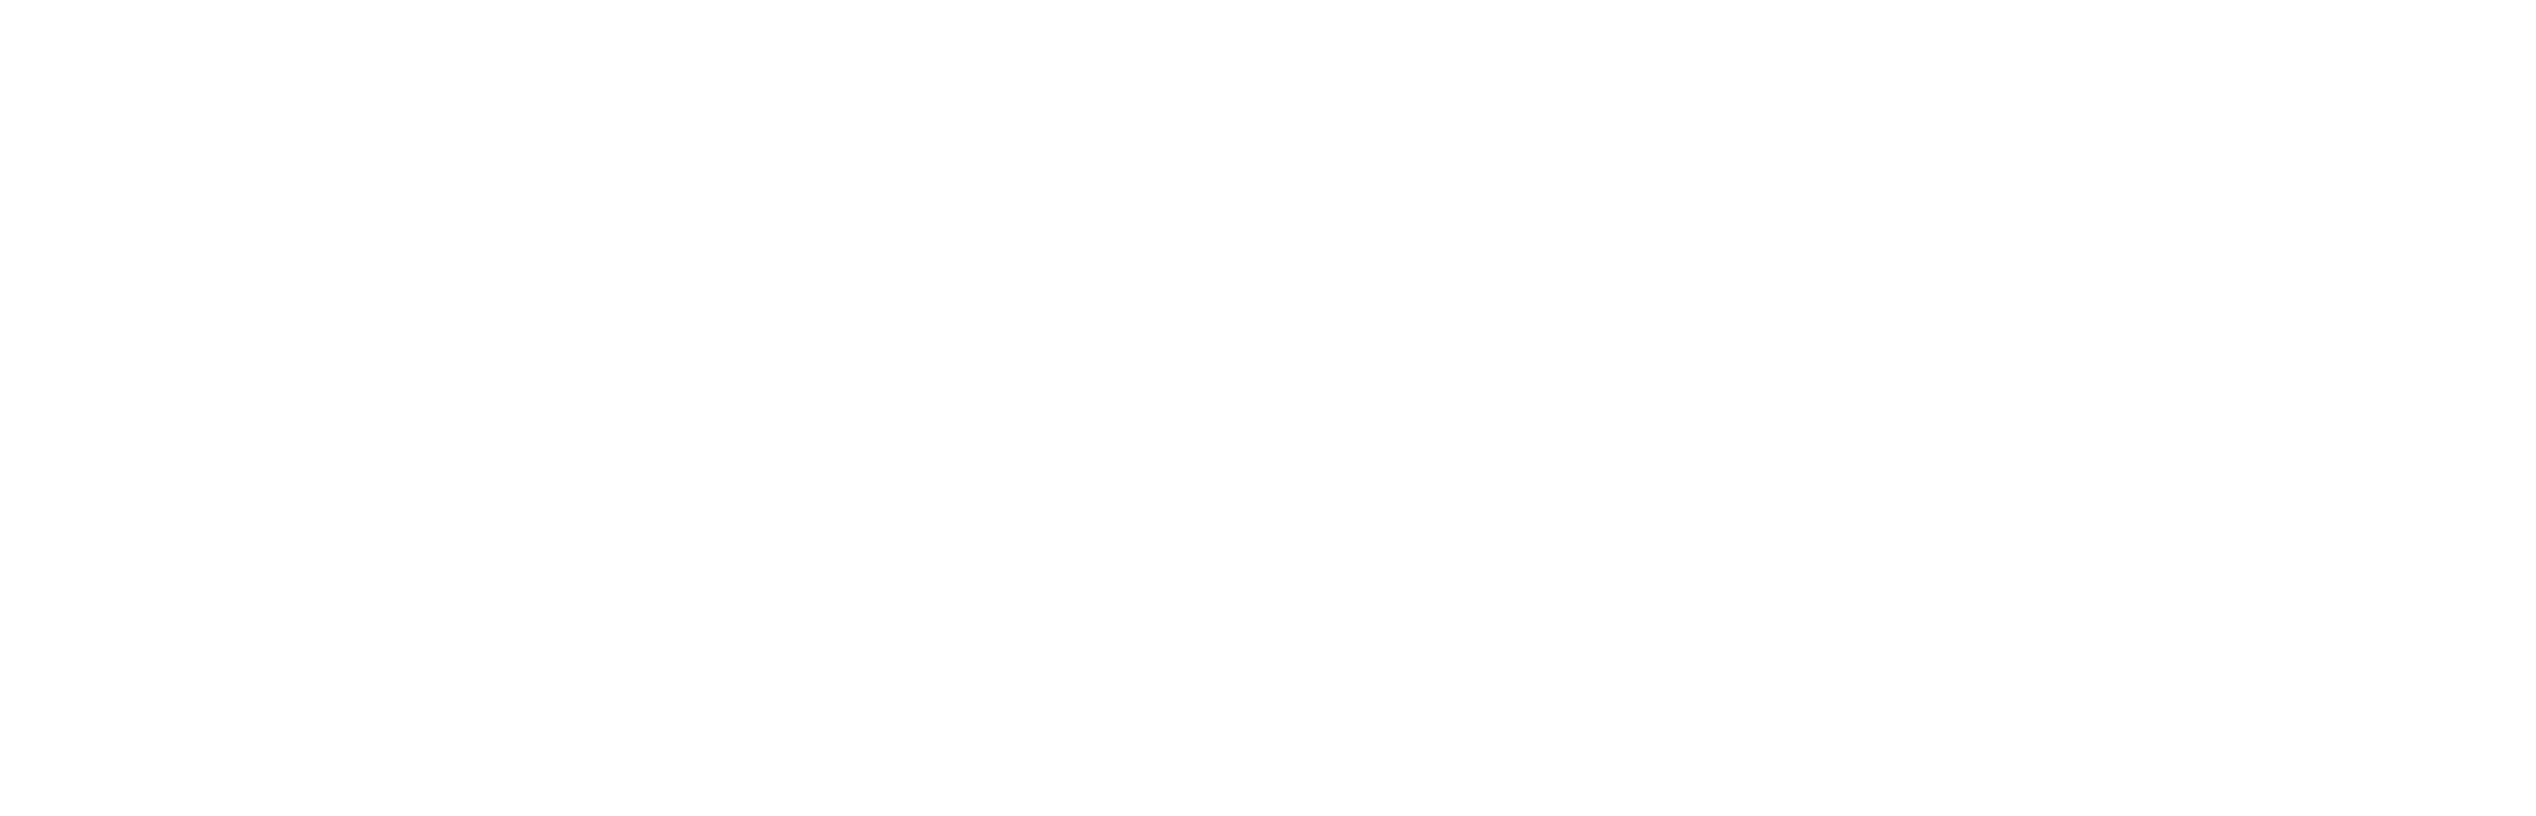 Redline Athletics Logo - White